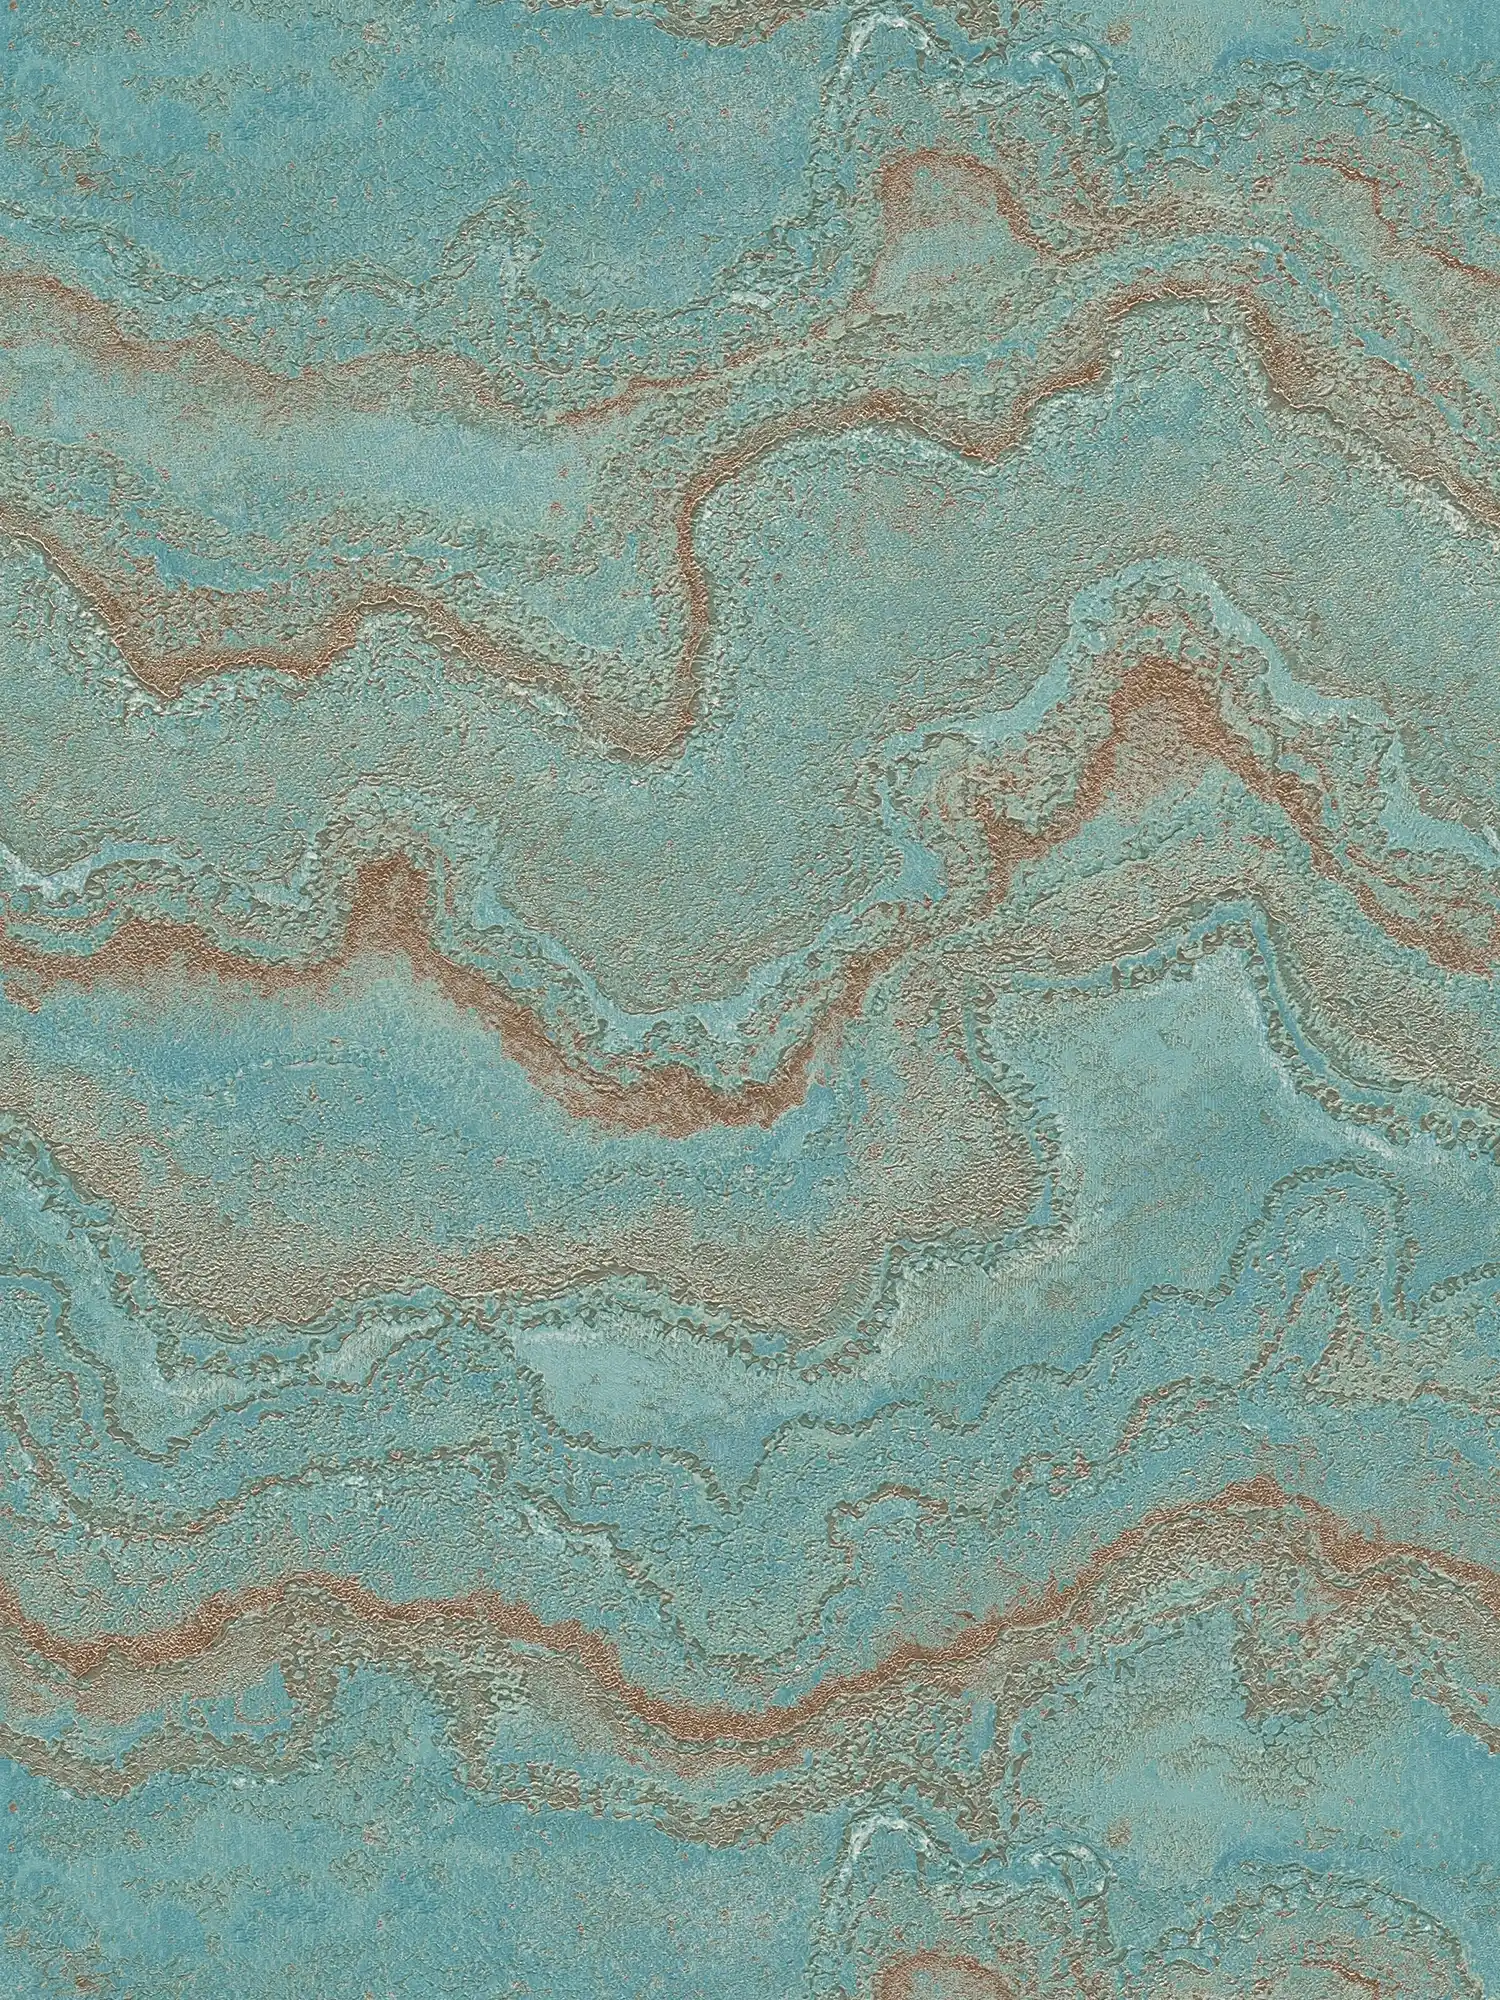         Vliestapete marmoriert mit Metallic- Effekt – Blau, Türkis, Gold
    